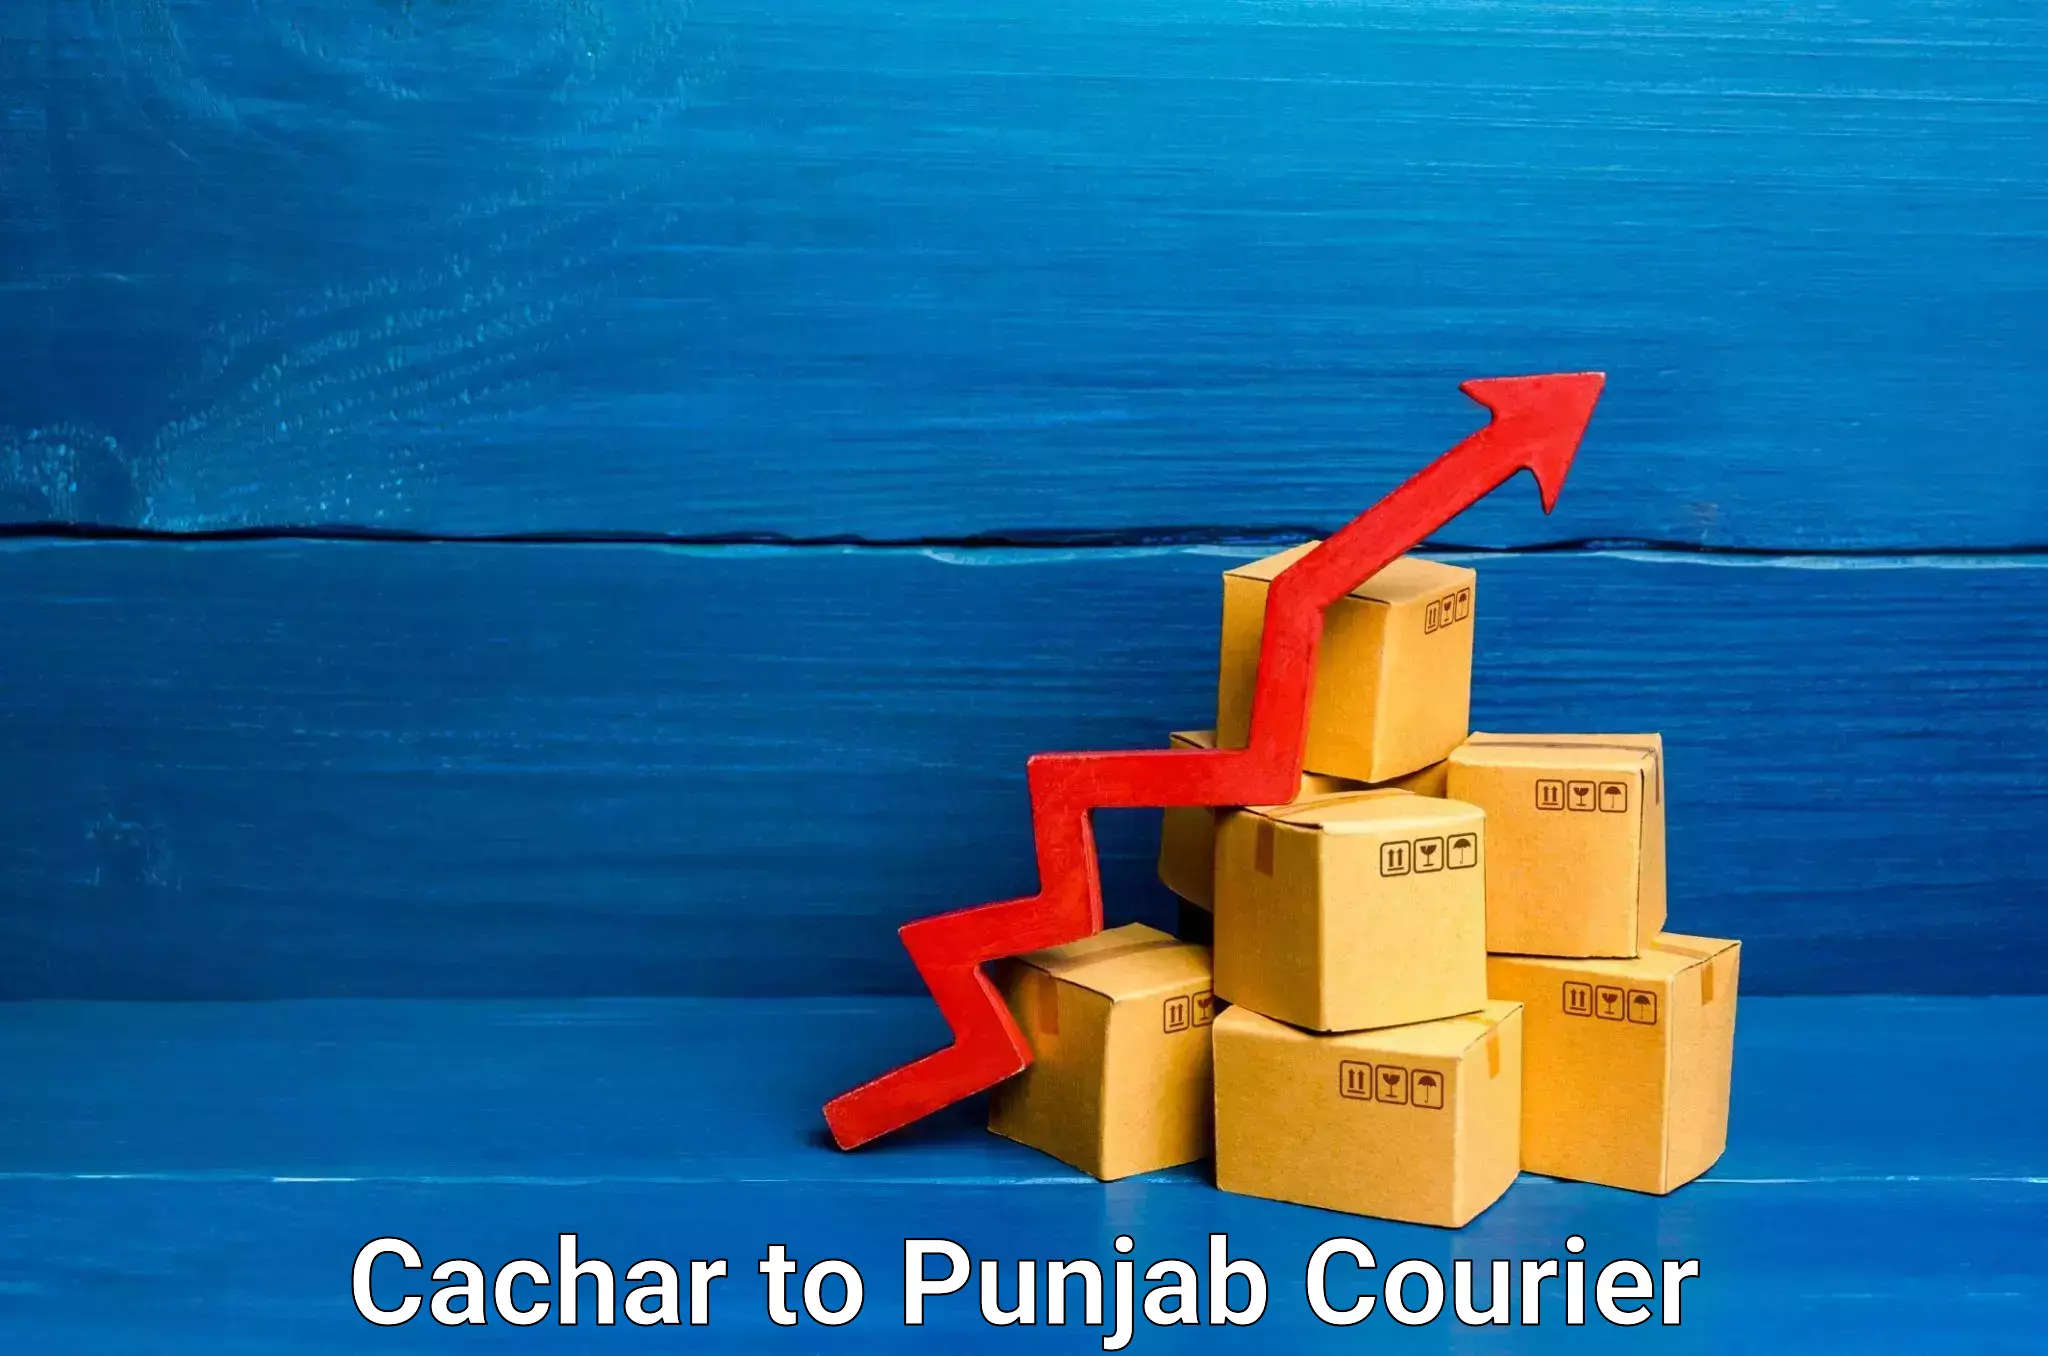 Punctual parcel services Cachar to Dhuri